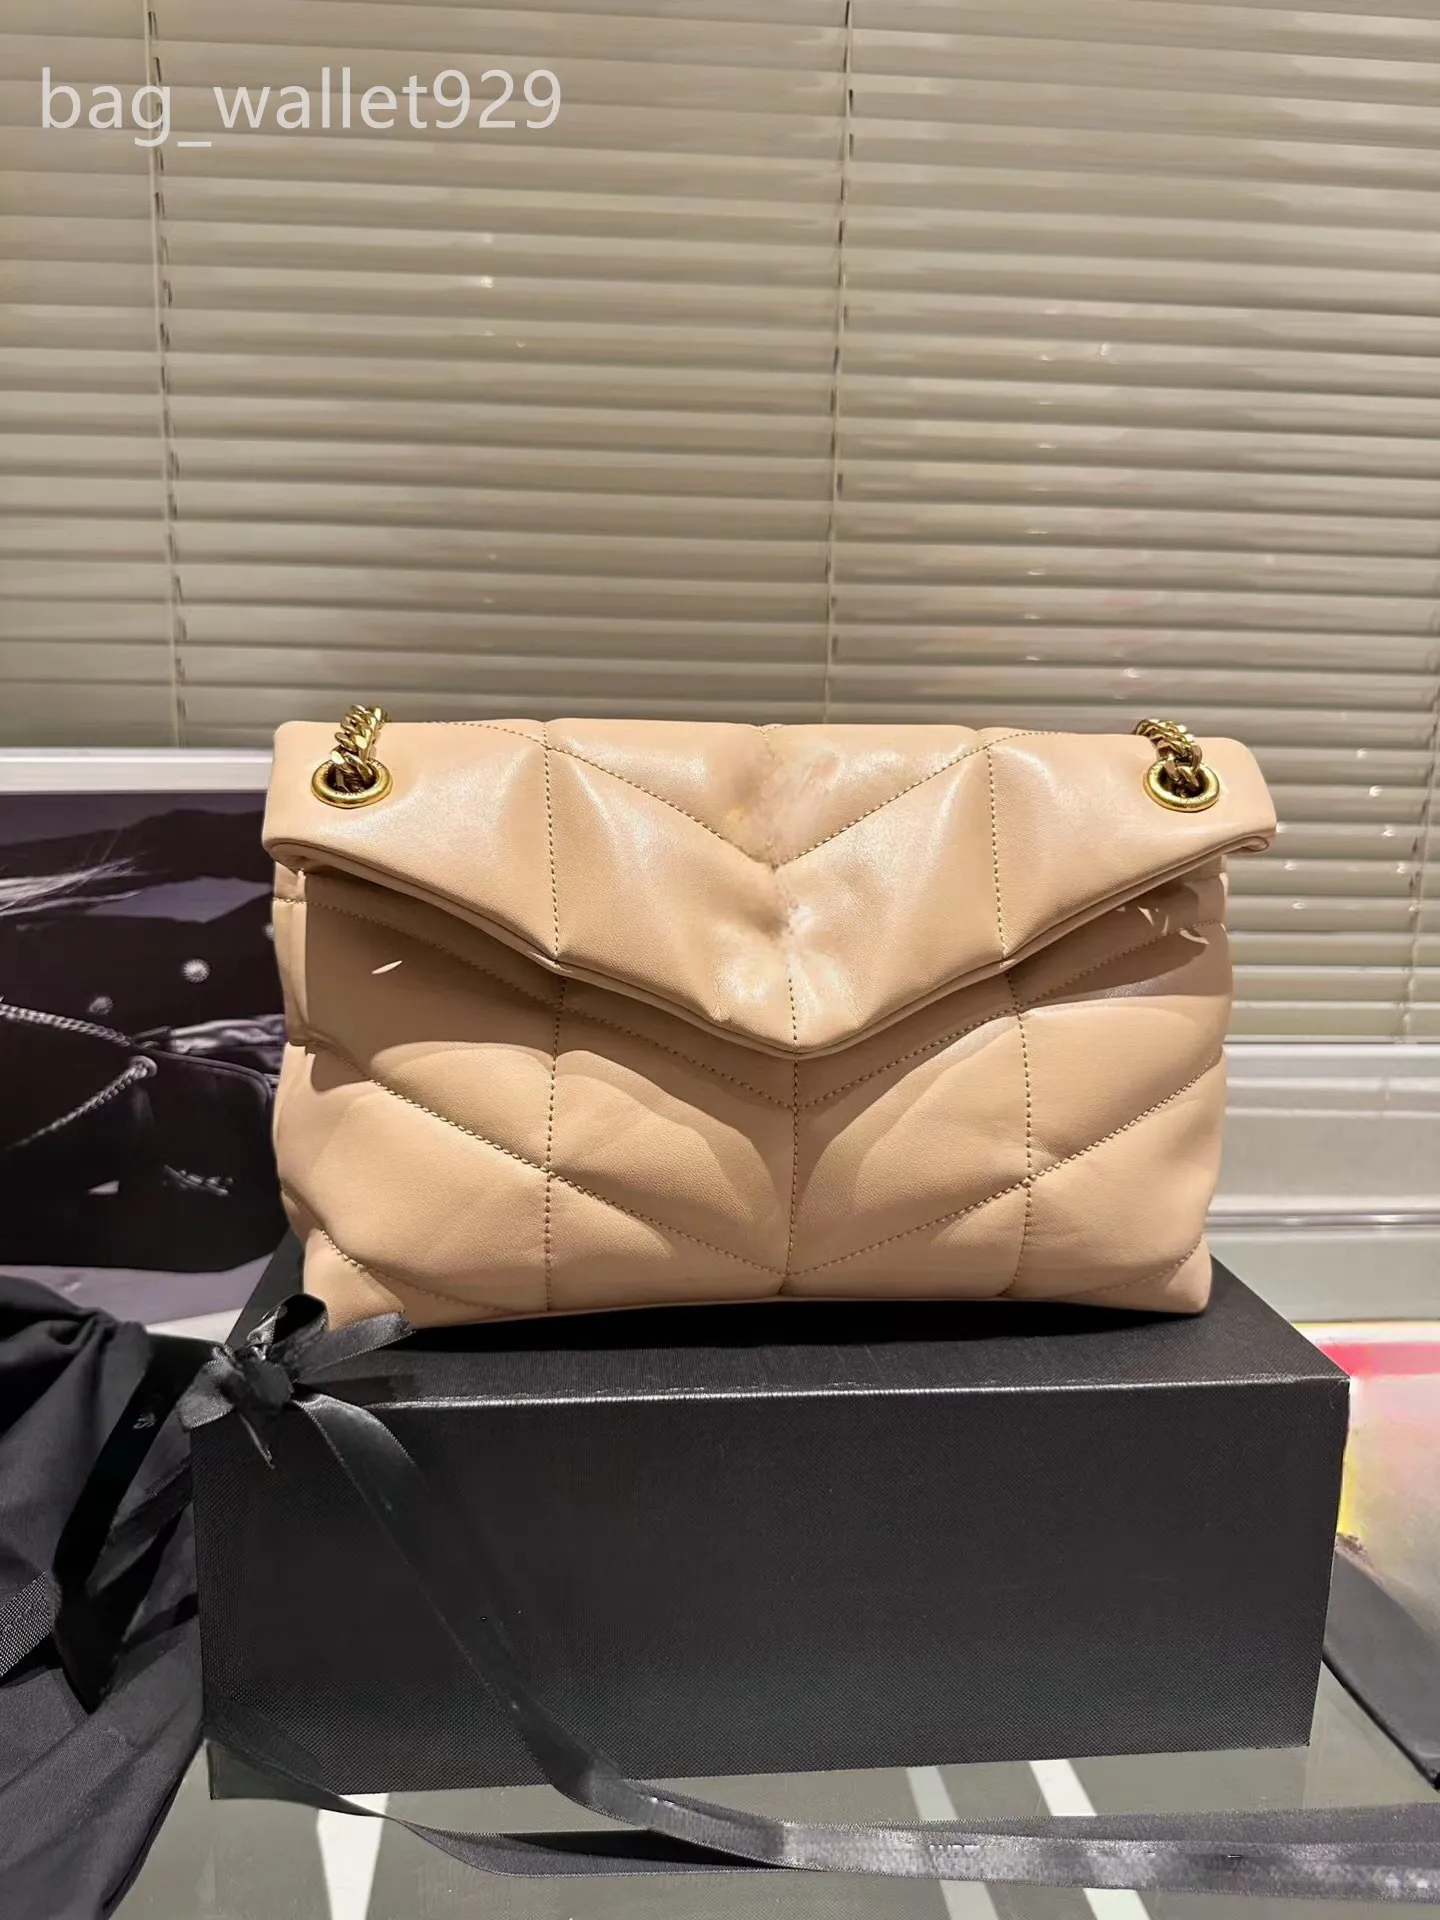 Mini crossbody bag Designer shoulder bags luxury handbags Classic woman bags flap bag Adjustable metal chain handbag Casual hobo bag Small bag Tote bags